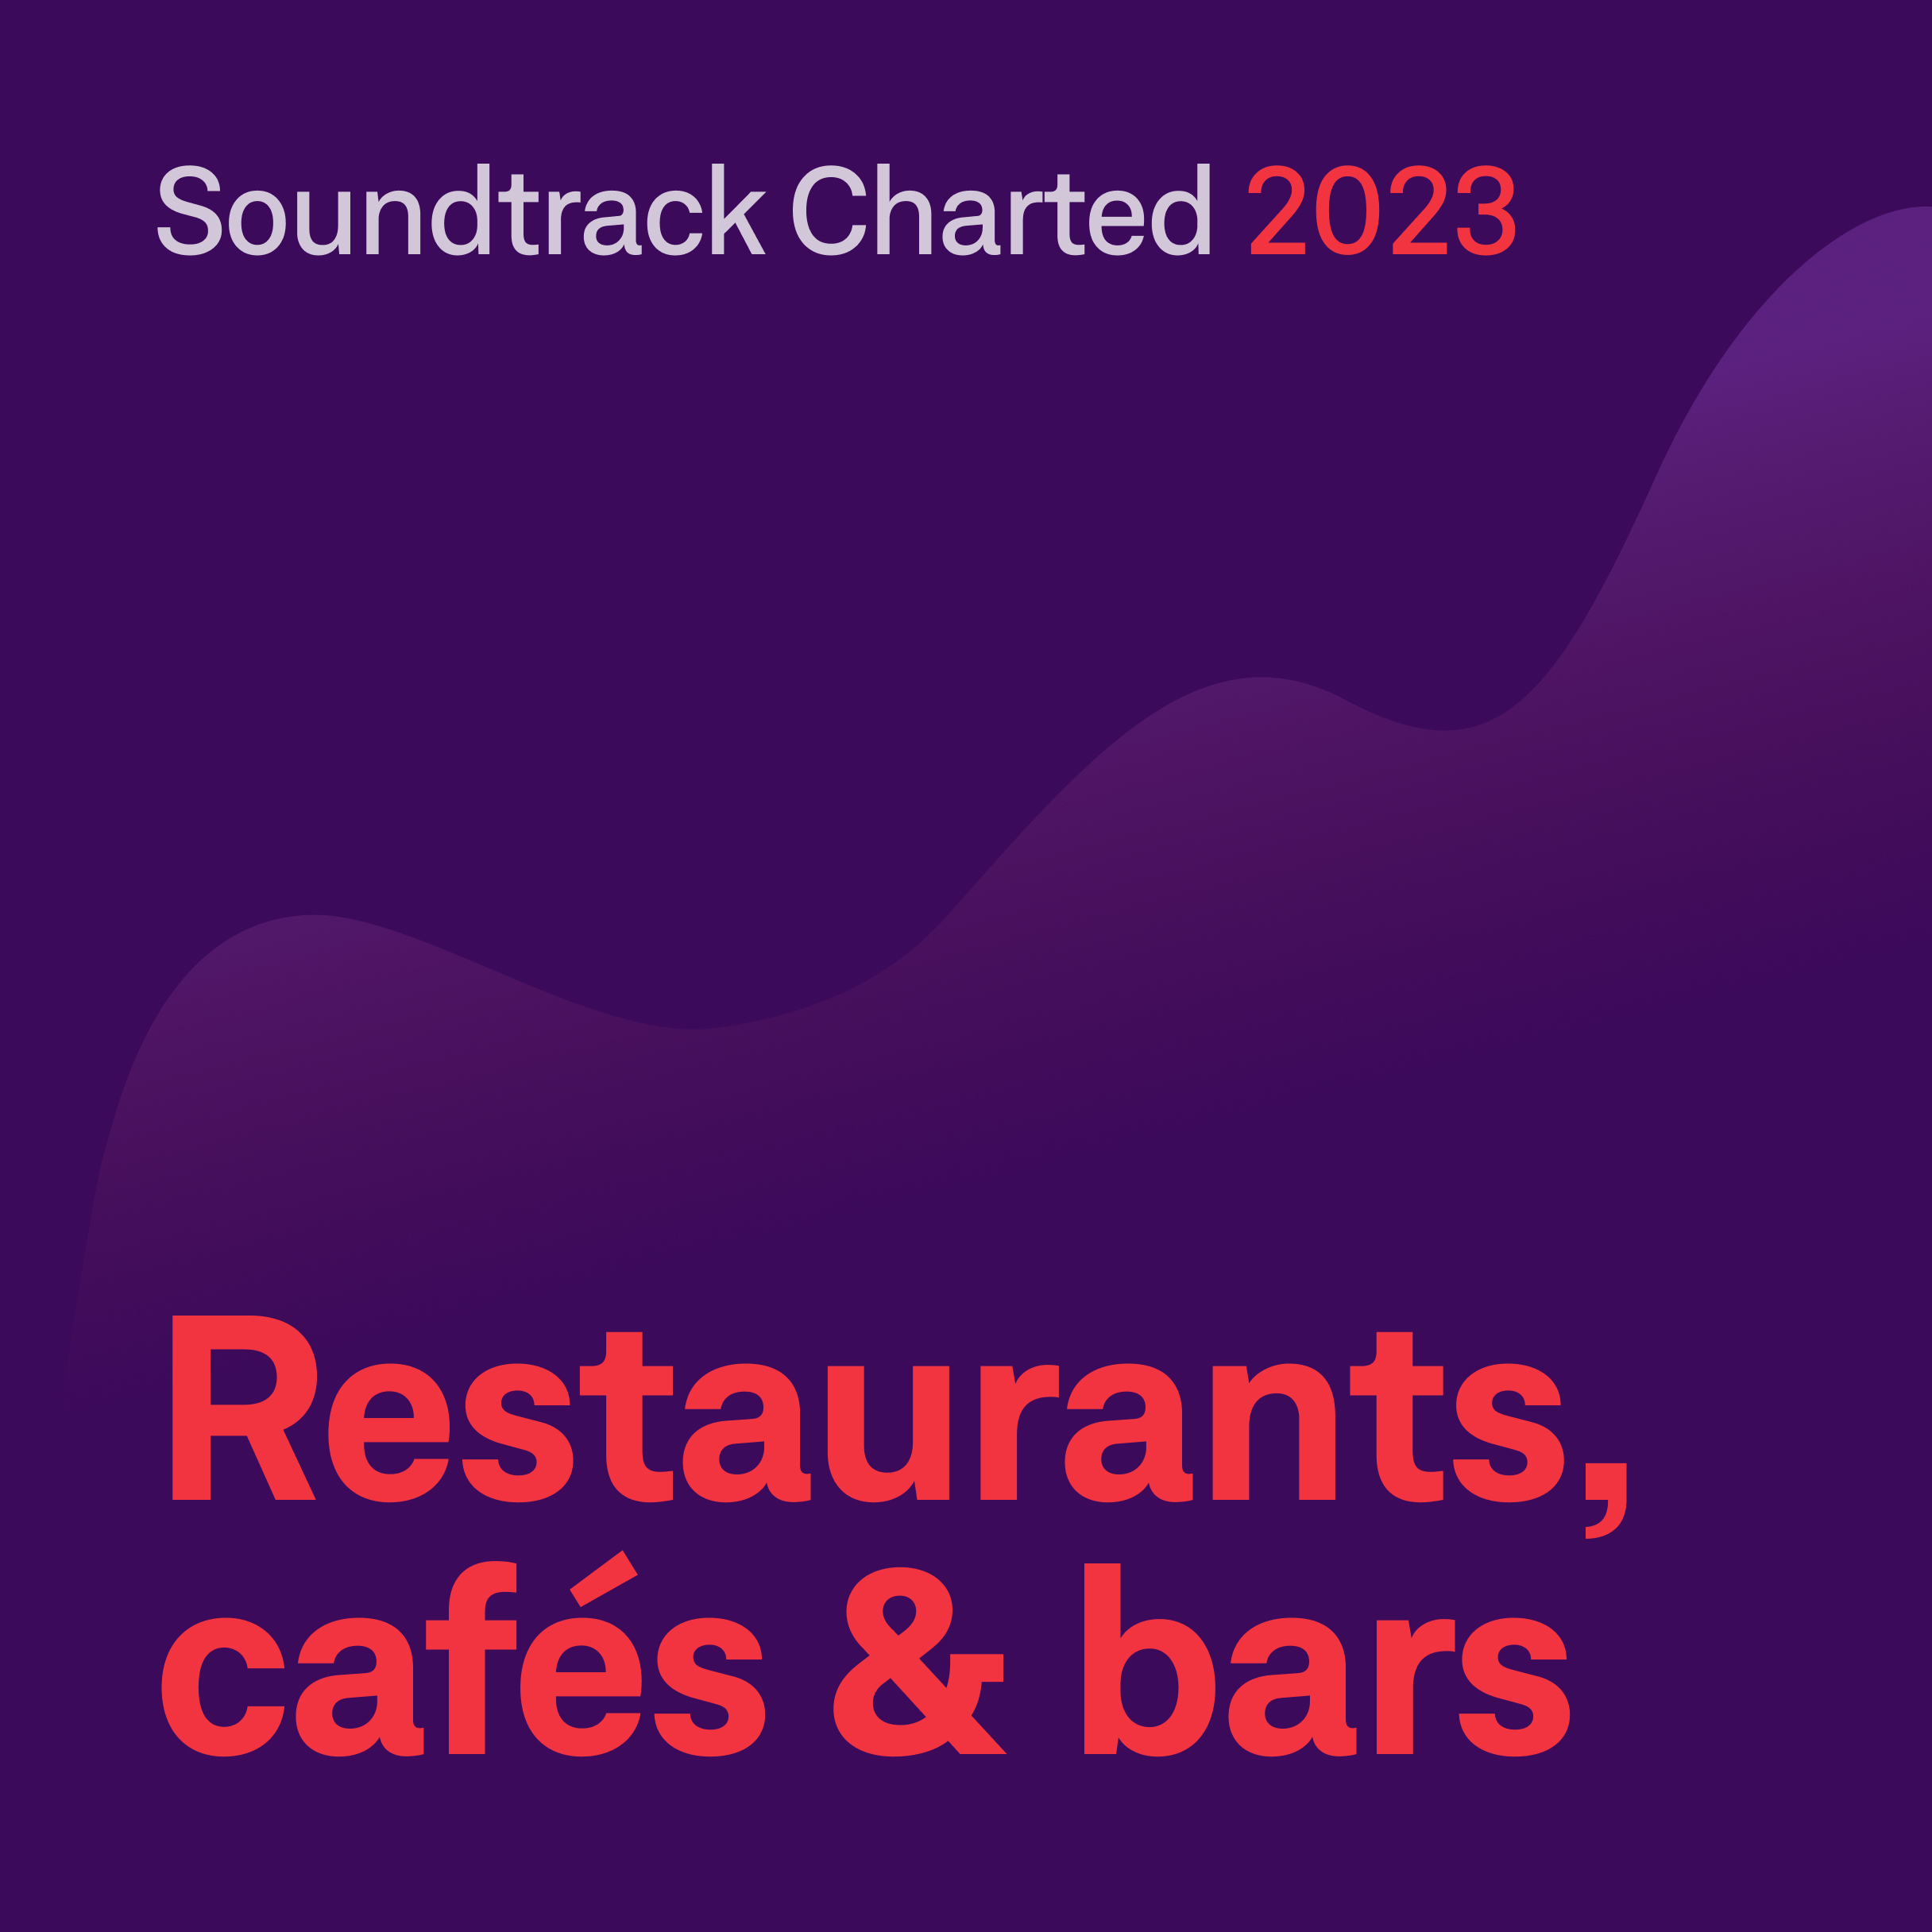 Soundtrack Charted 2023 - restaurants, cafes, bars